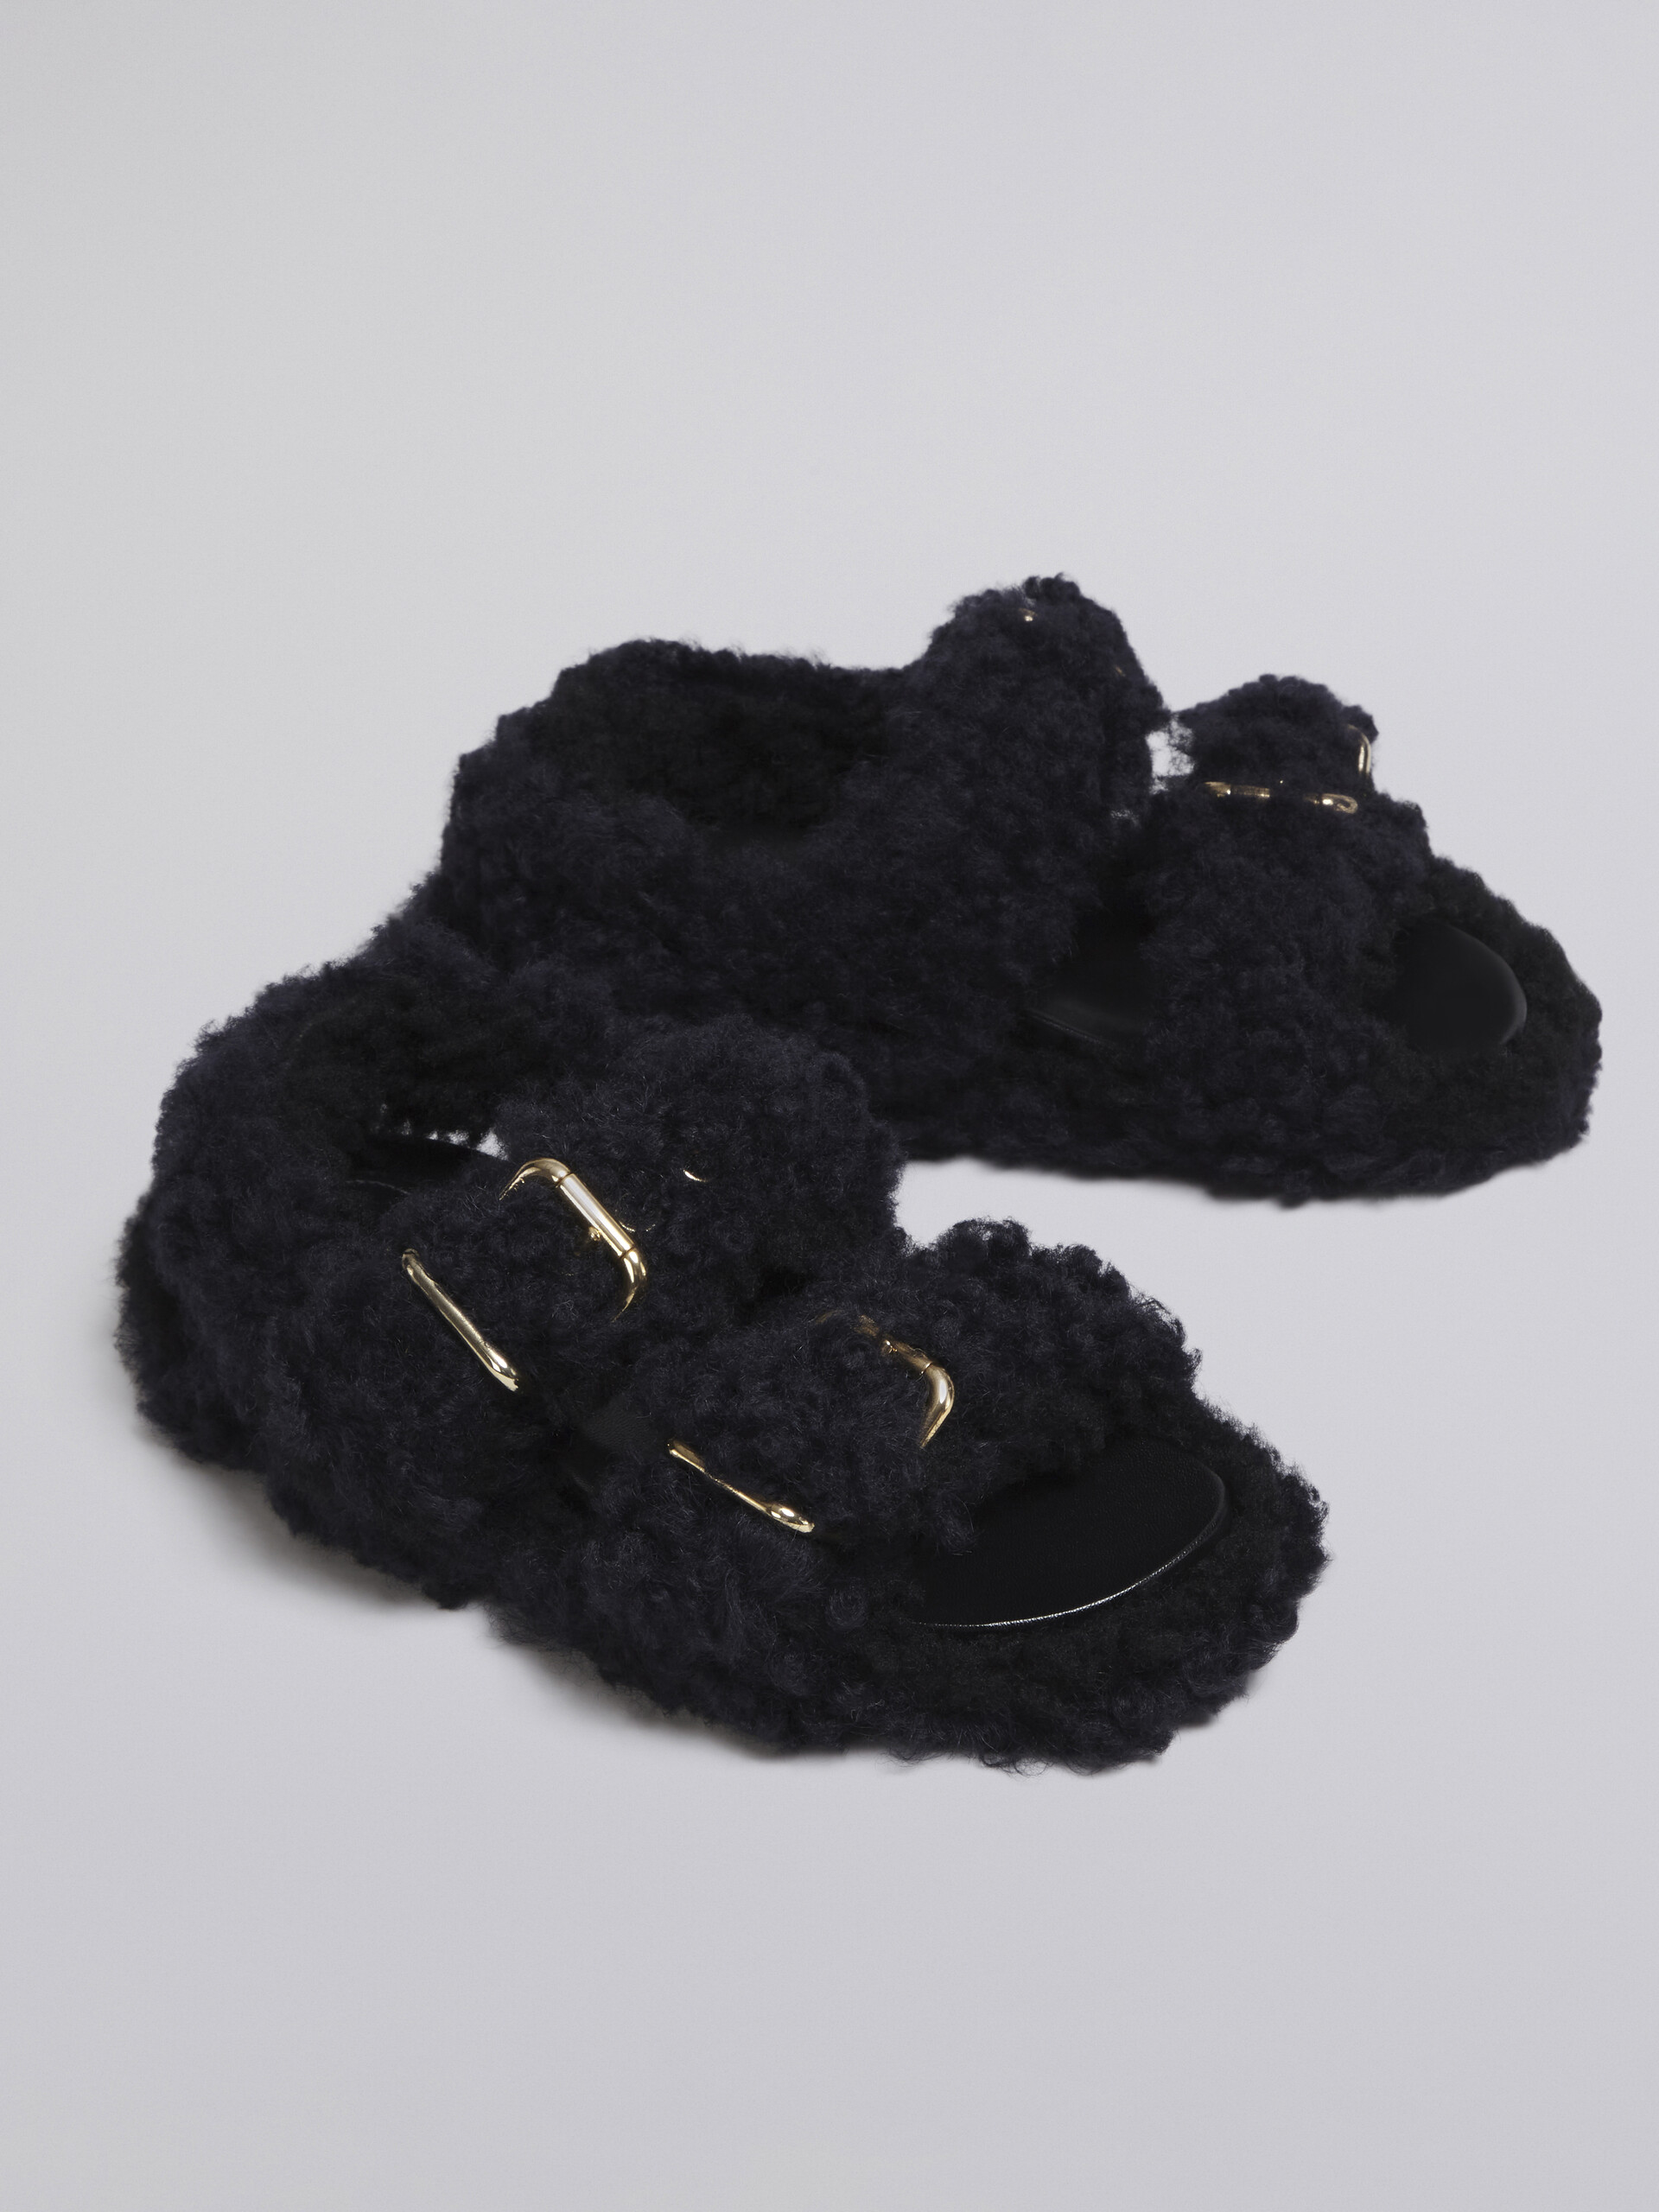 Black shearling Fussbet - Sandals - Image 5